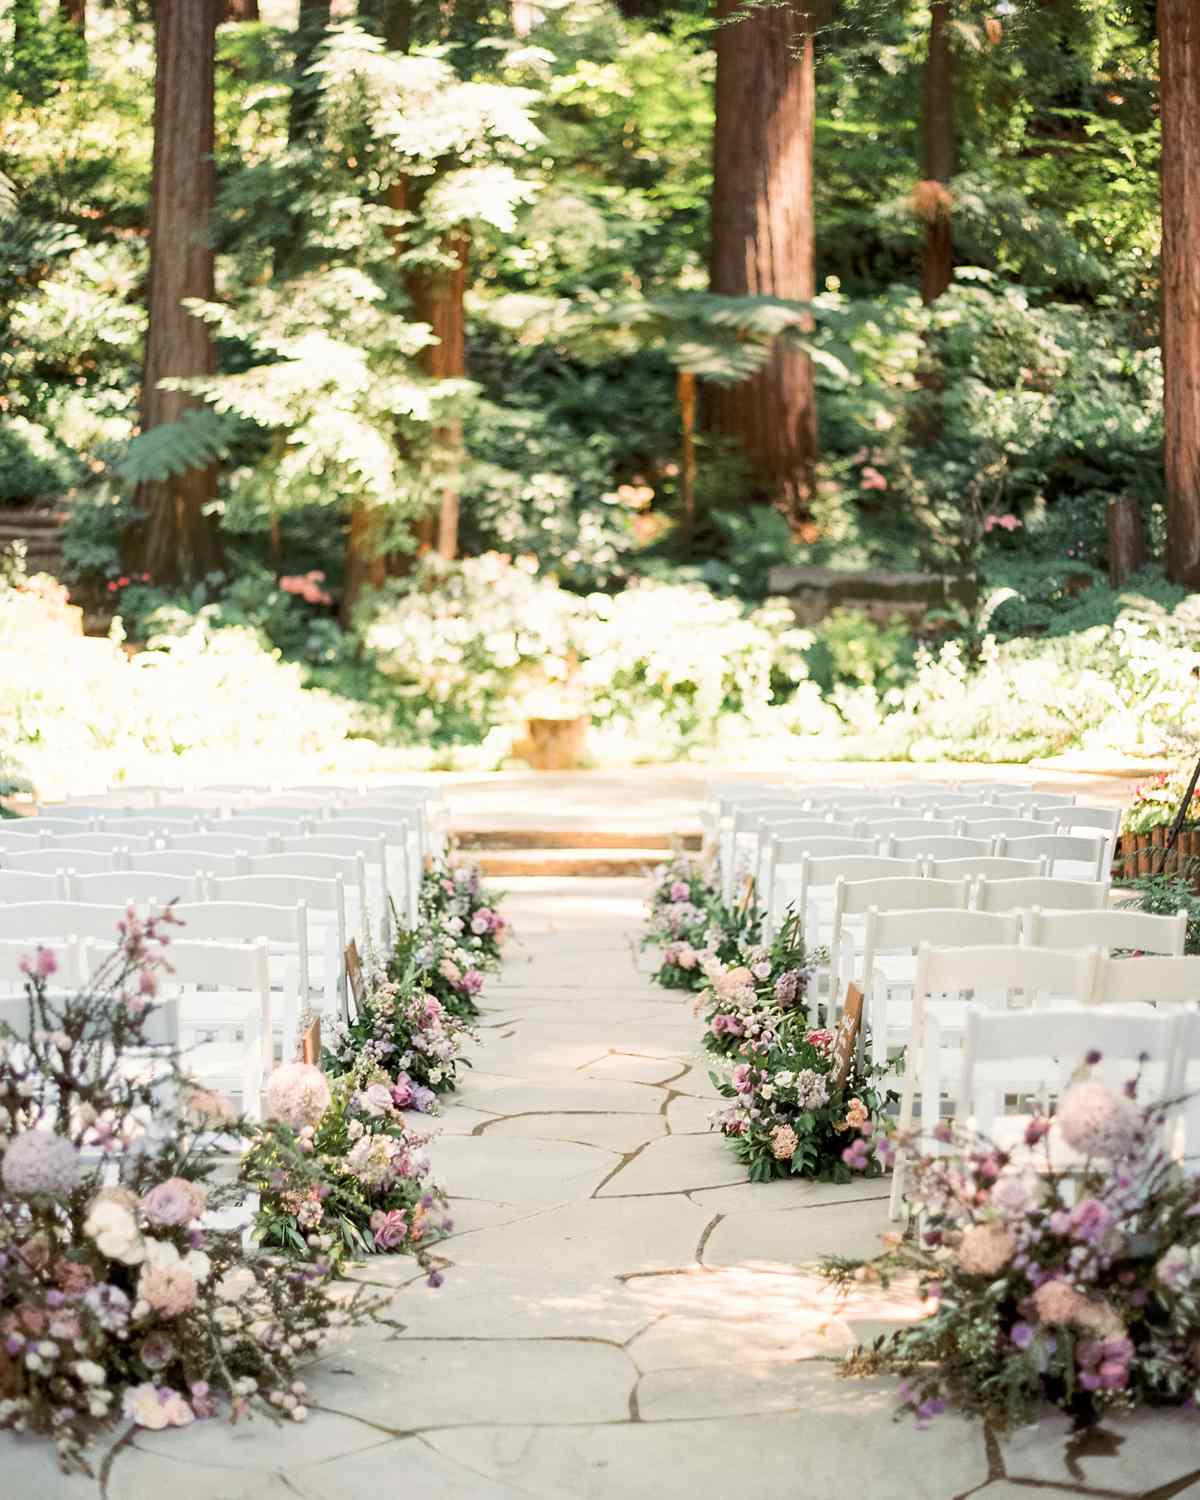 woodsy floral arrangements wedding aisle